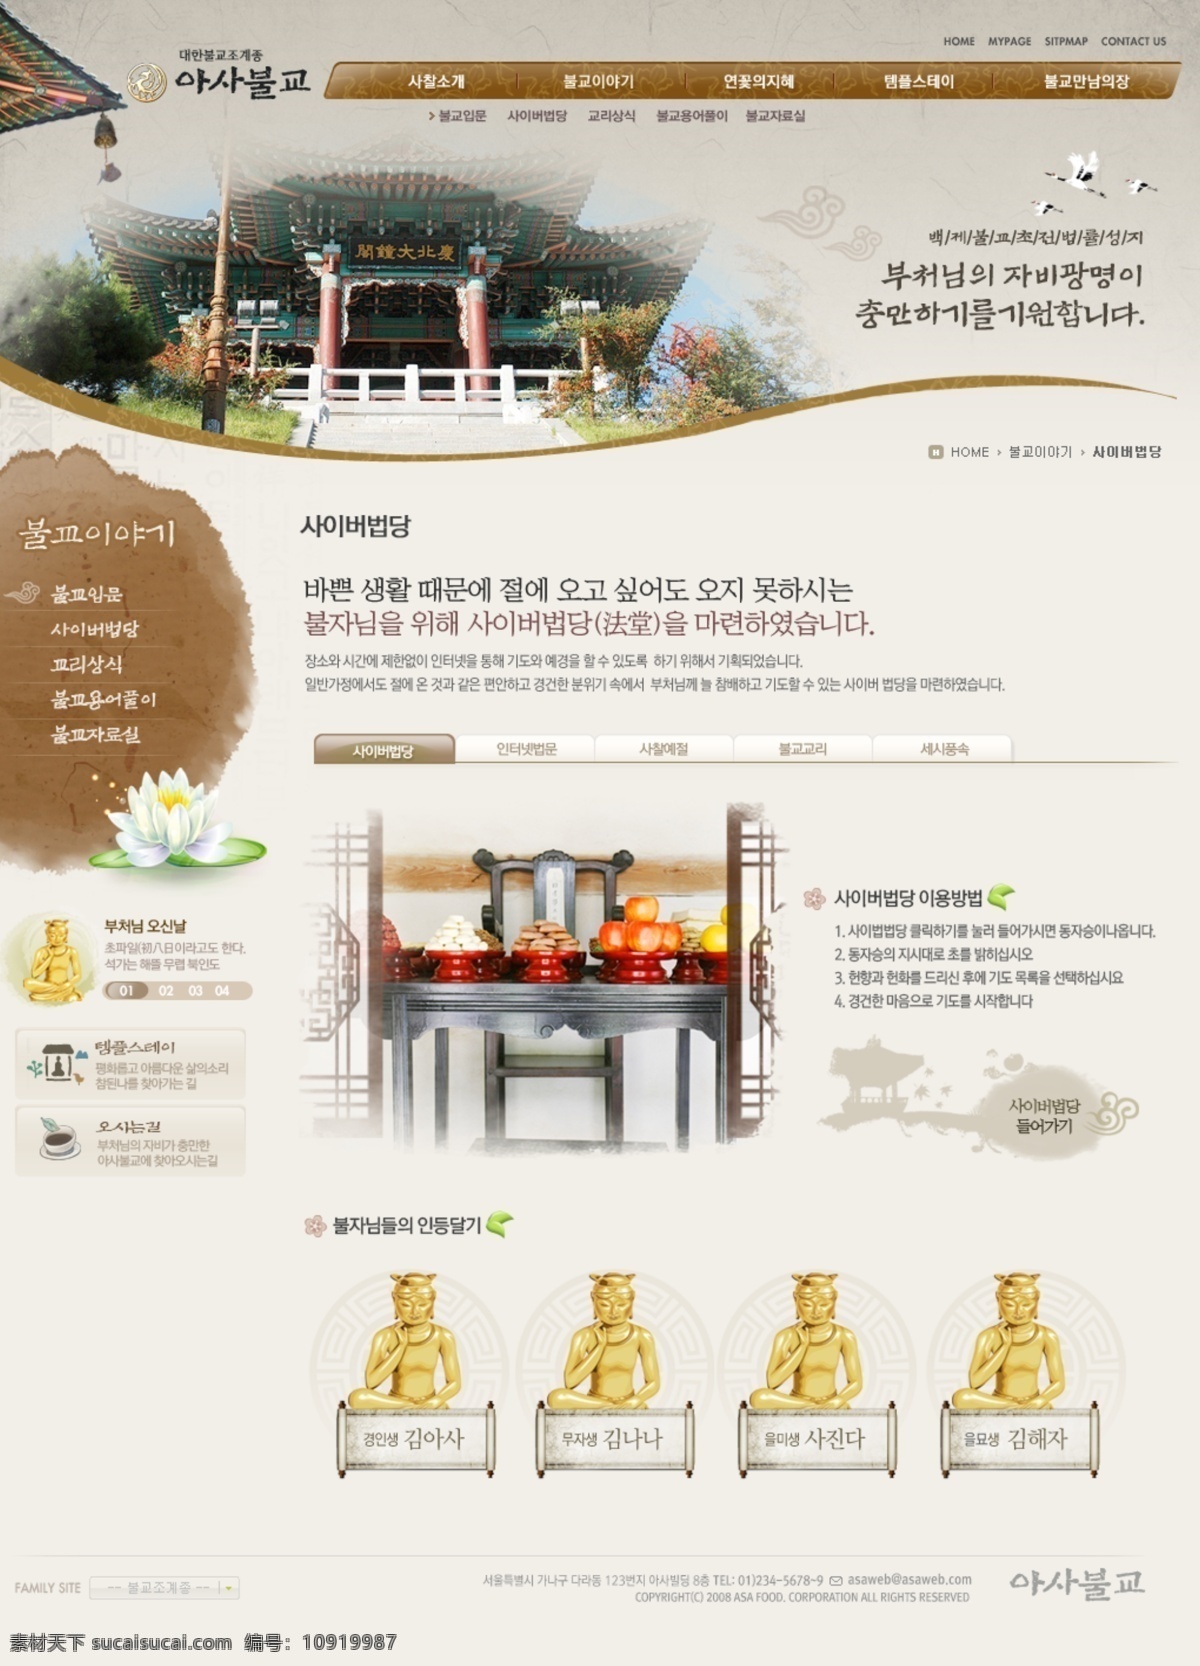 超 漂亮 韩国 宗教 网站 模版 大全 包括 子 页面 完整 韩国网站 佛教网站 子页面 所有页面 超漂亮 网页素材 网页模板